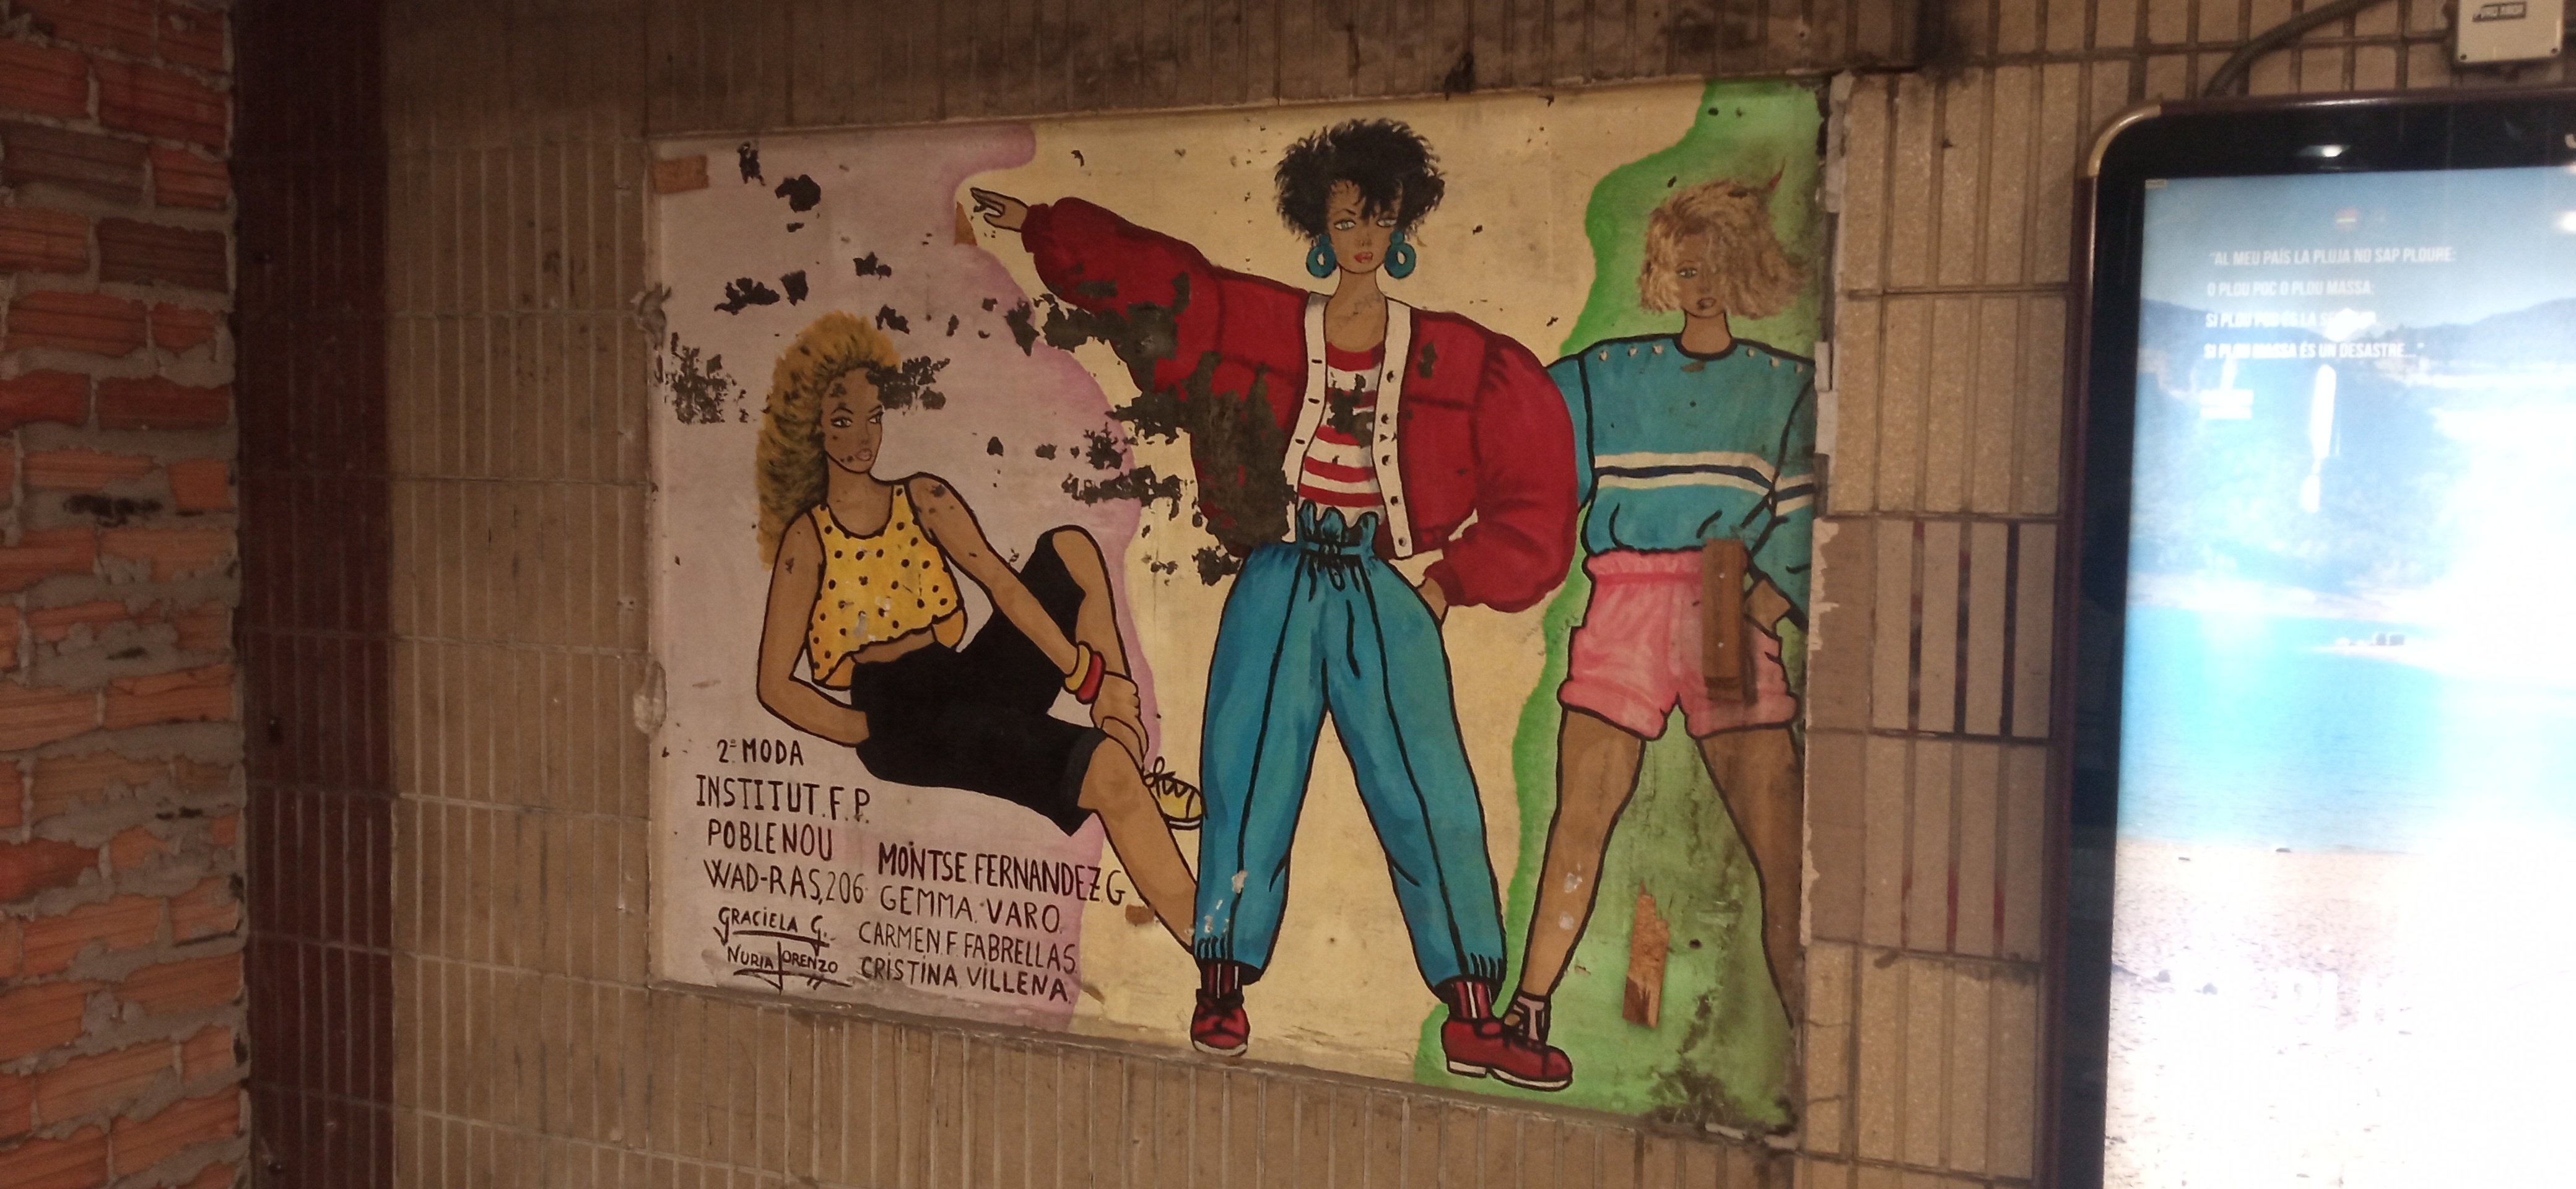 Sorpresa en el Metro: aflora un mural oculto en la estación de Verdaguer